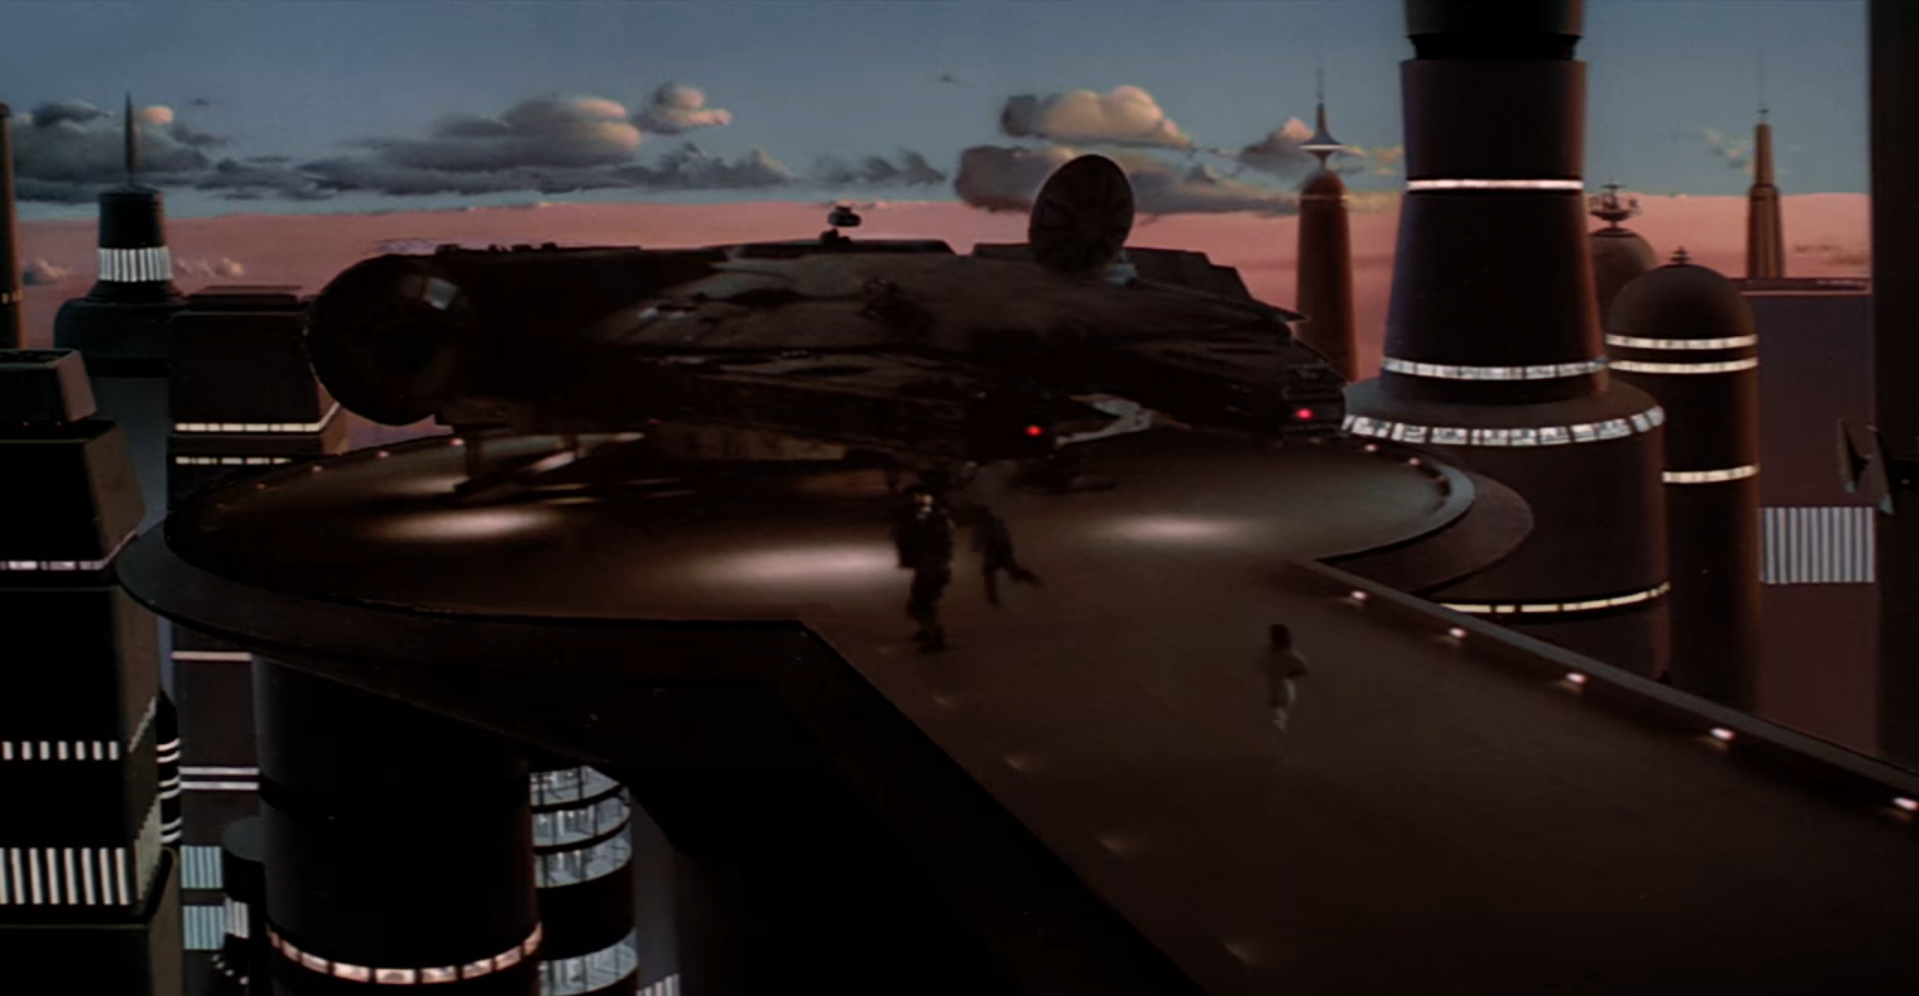 Cena do filme Star Wars exibindo pessoas correndo em uma plataforma em direção a uma nave. Ao fundo, os prédios de uma cidade e o céu azul-claro com nuvens.